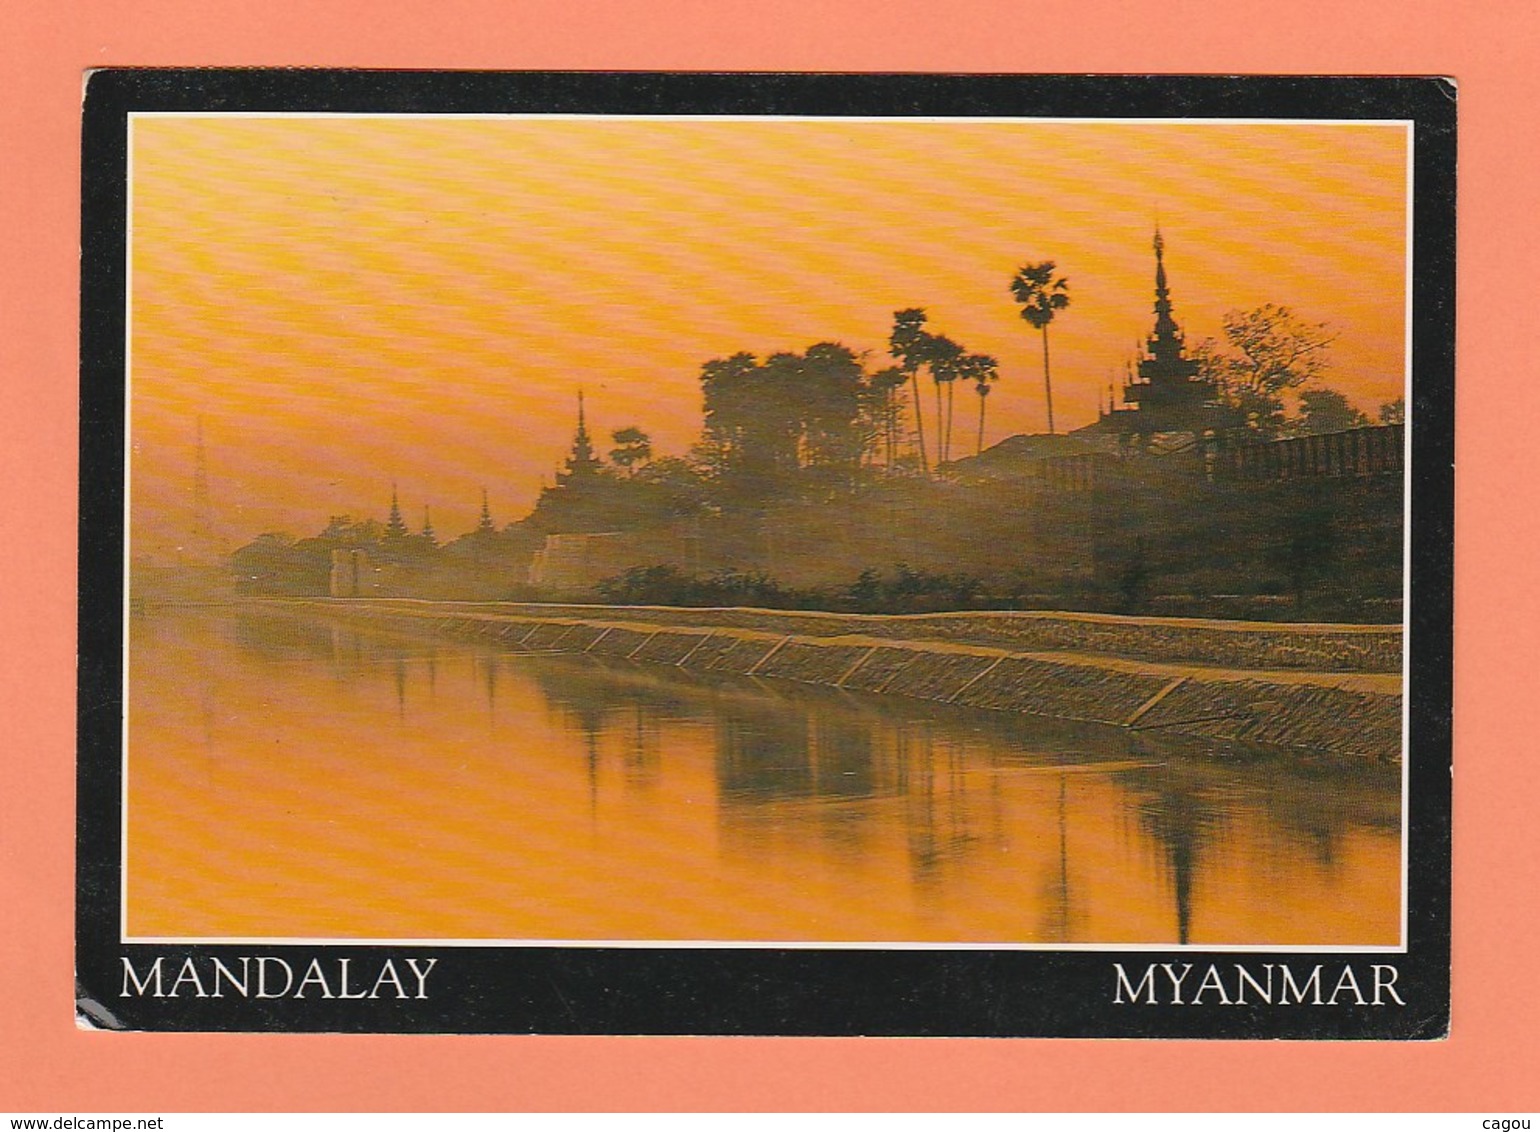 MYANMAR (BIRMANIE) MANDALAY - Myanmar (Burma)